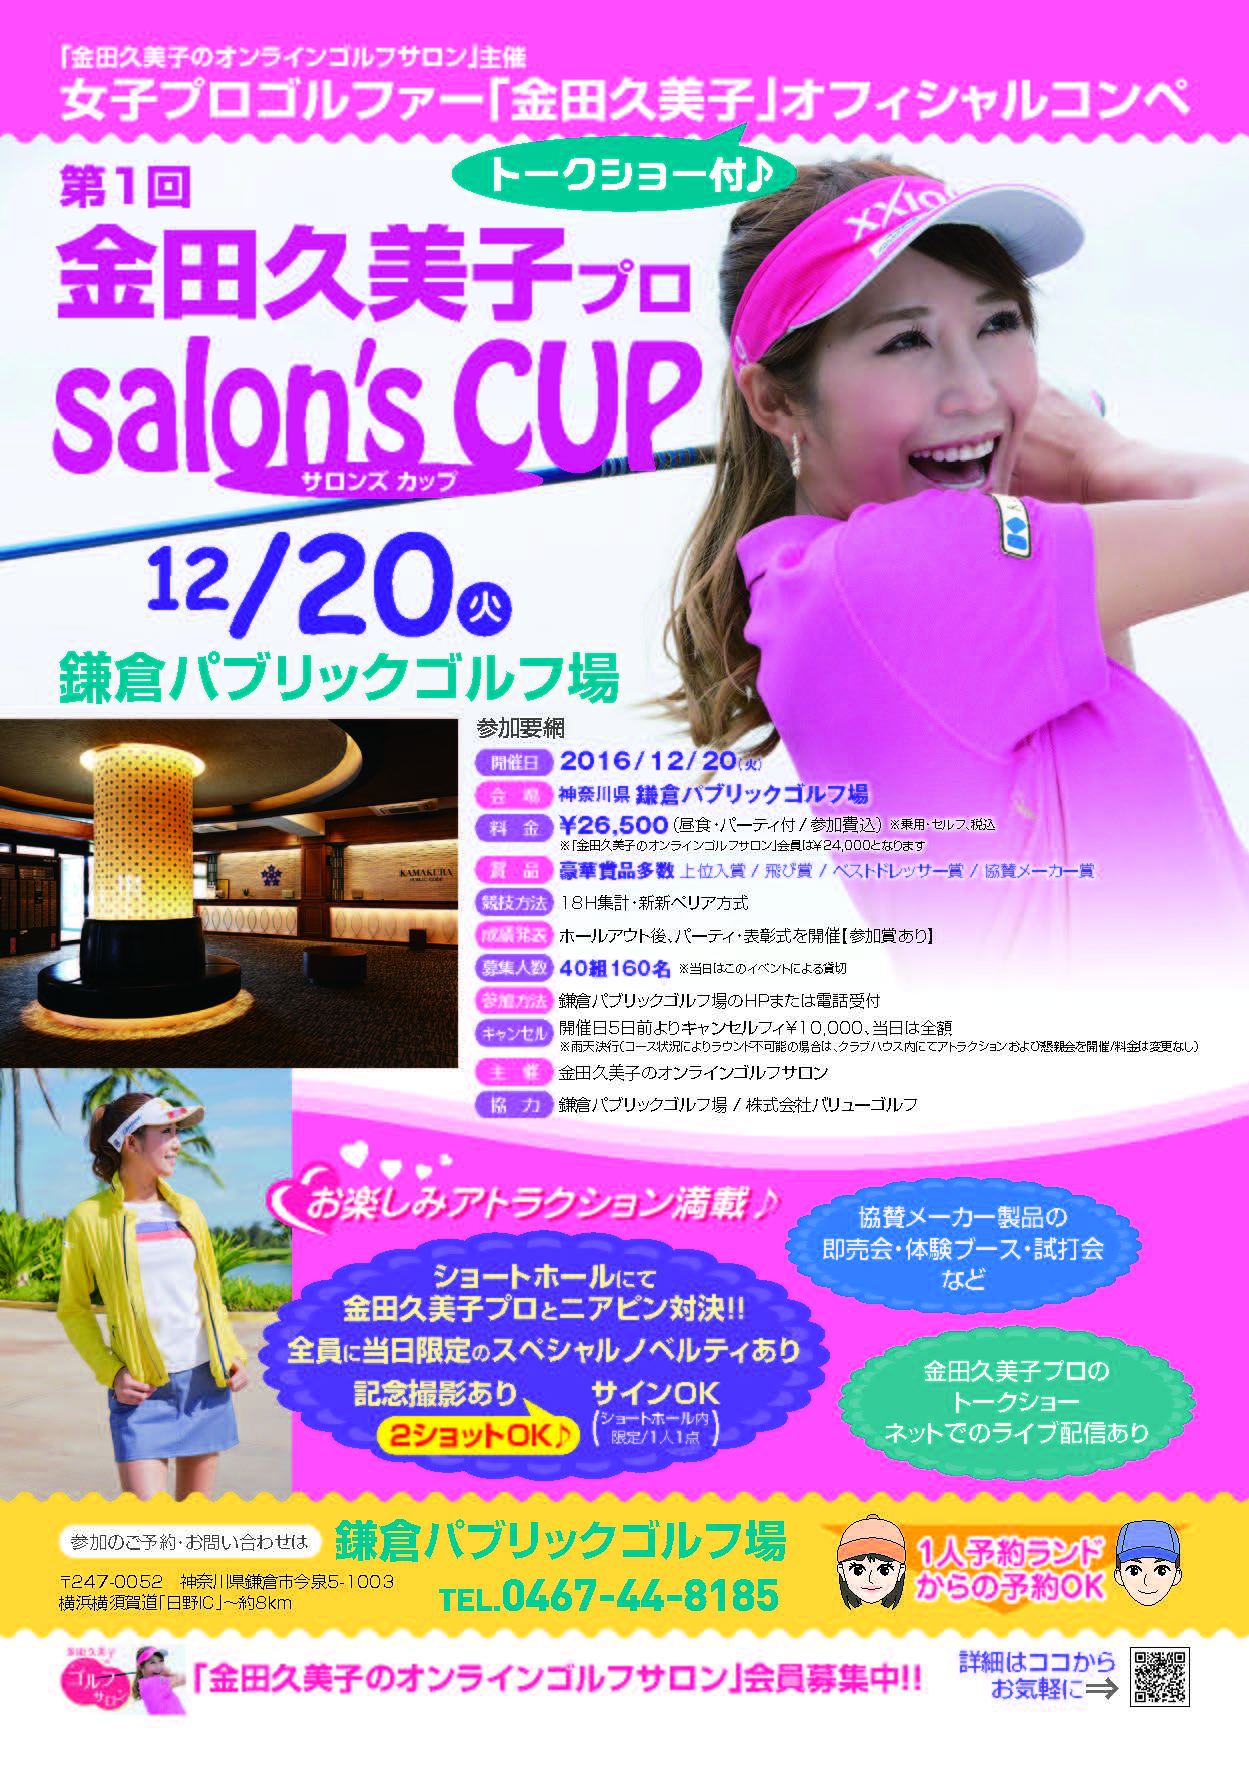 金田久美子プロ Salon S Cup サロンズ カップ 開催 鎌倉パブリックゴルフ場